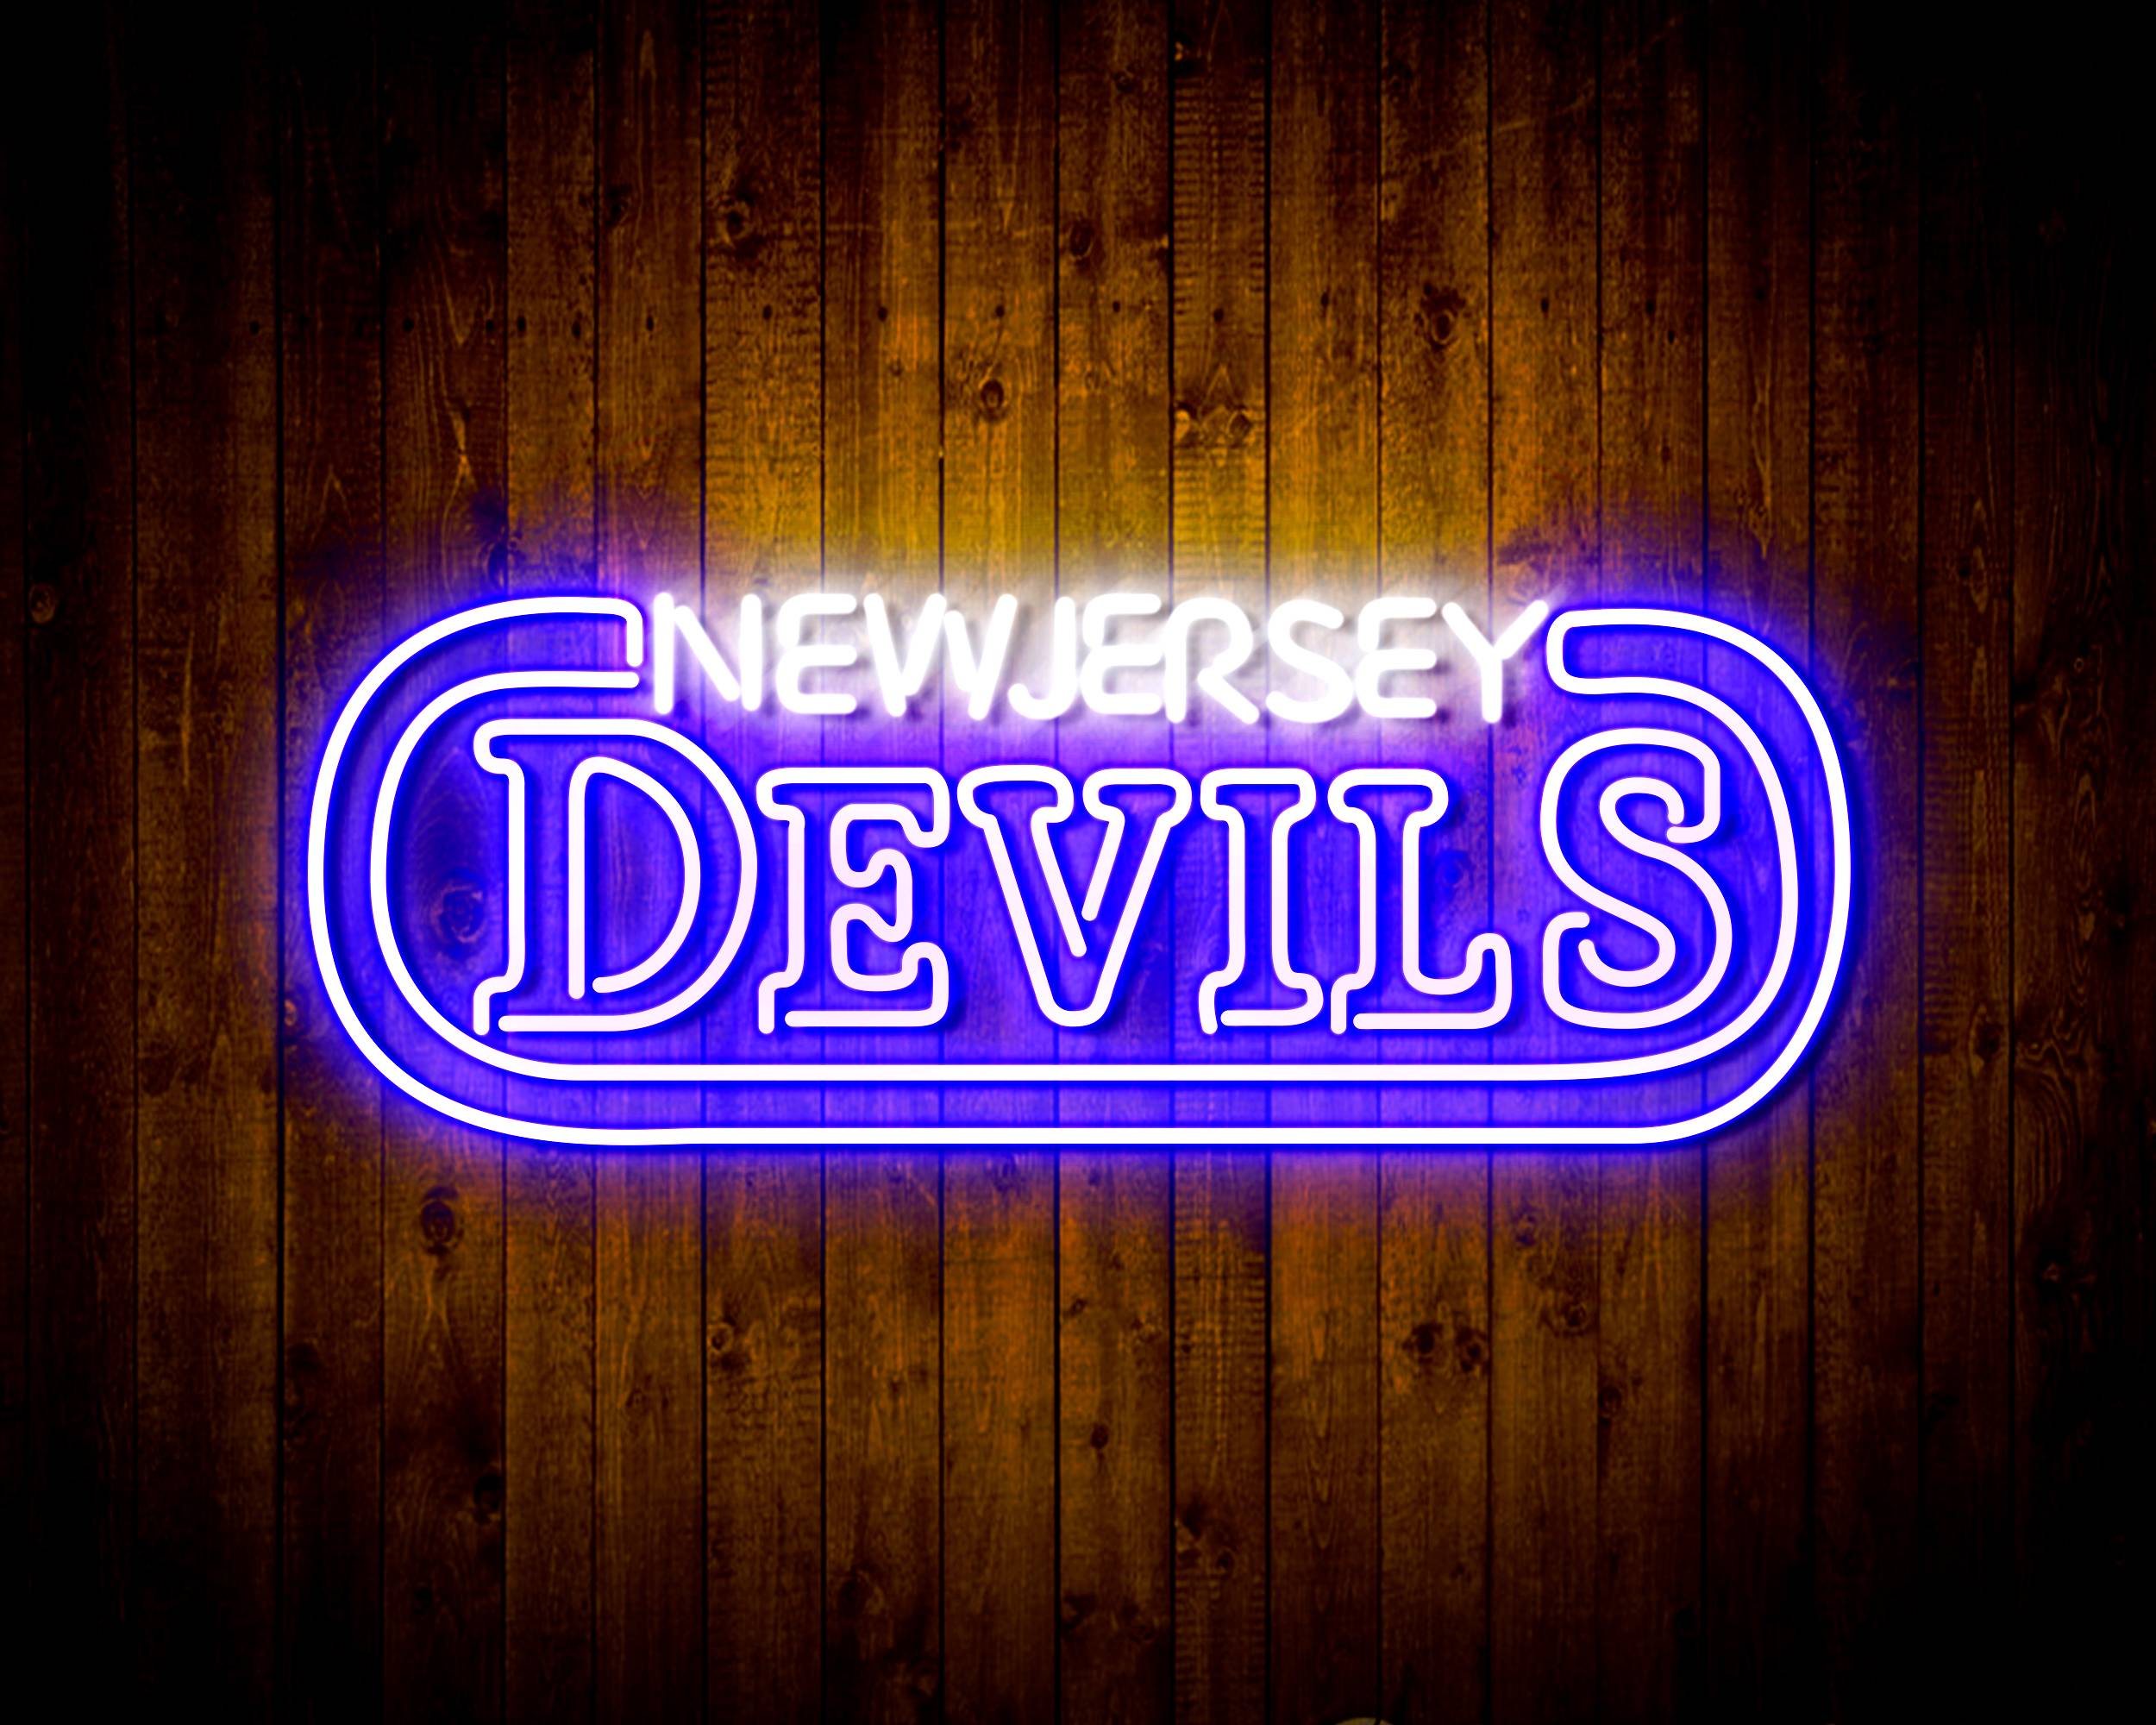 NHL New Jersey Devils Handmade LED Neon Light Sign